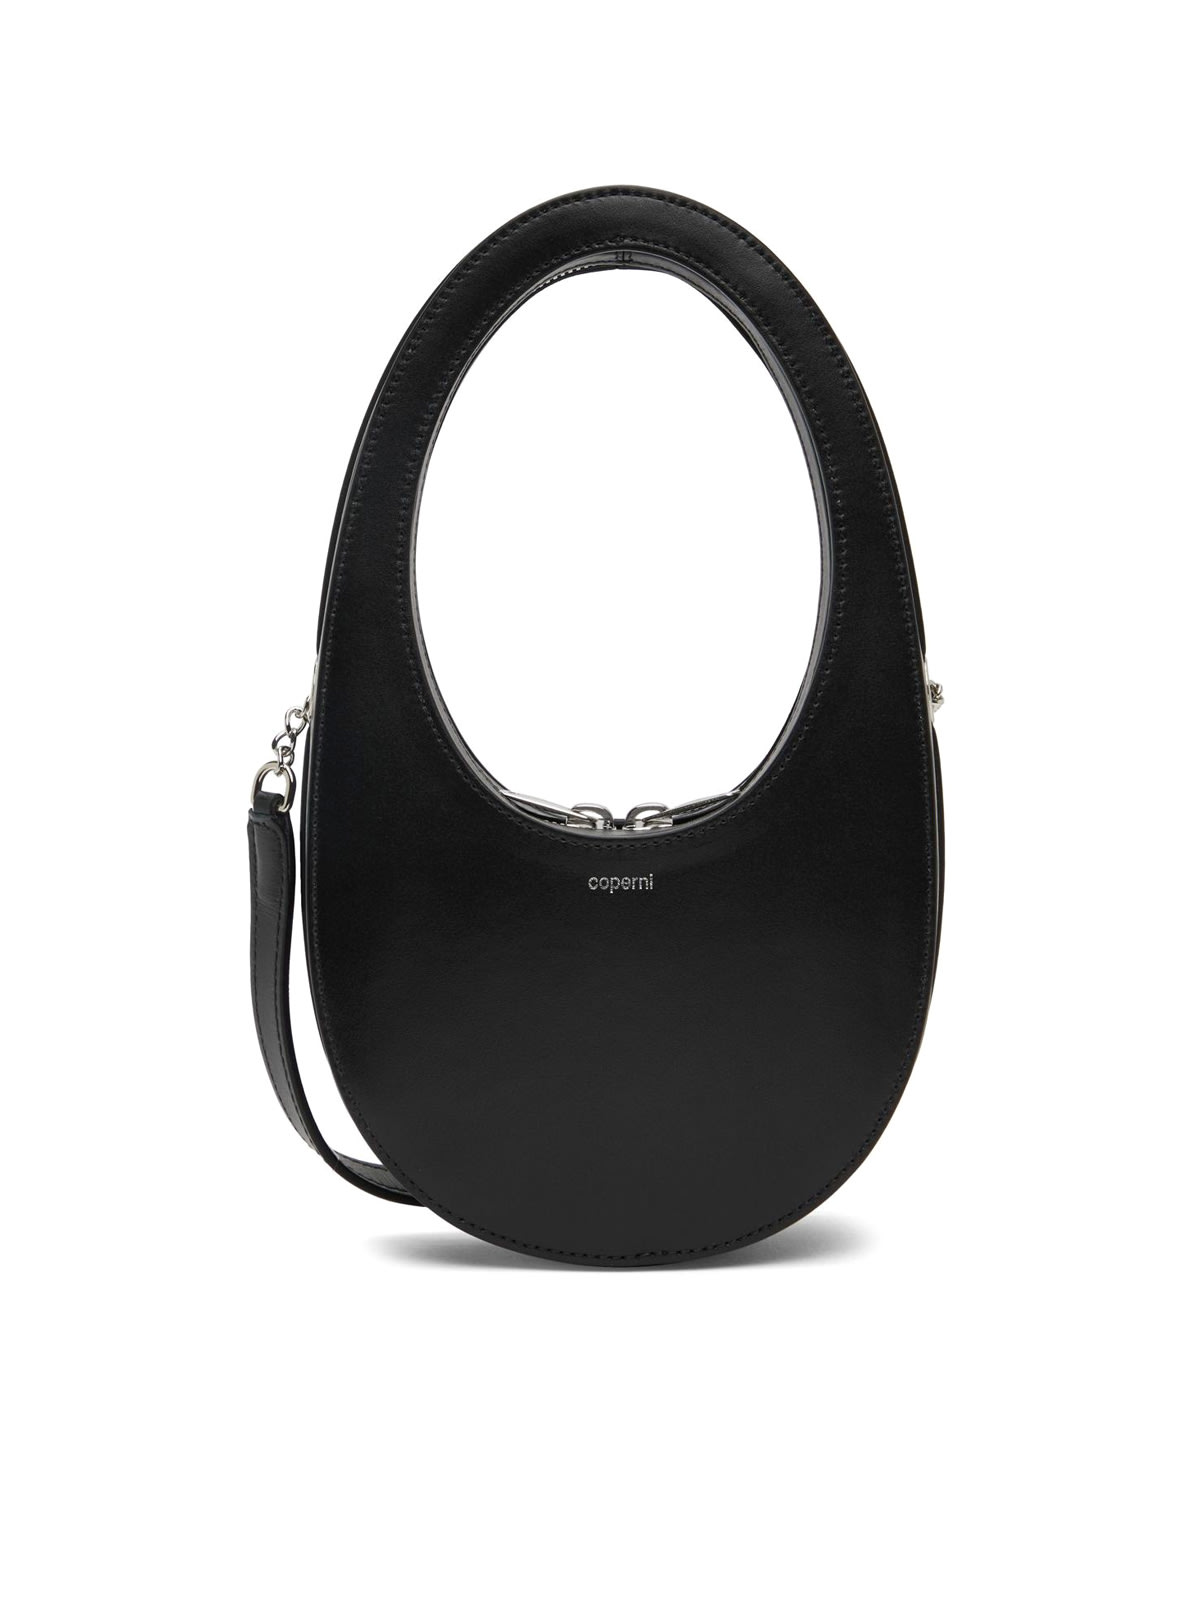 Coperni Crossbody Mini Swipe Bag In Black